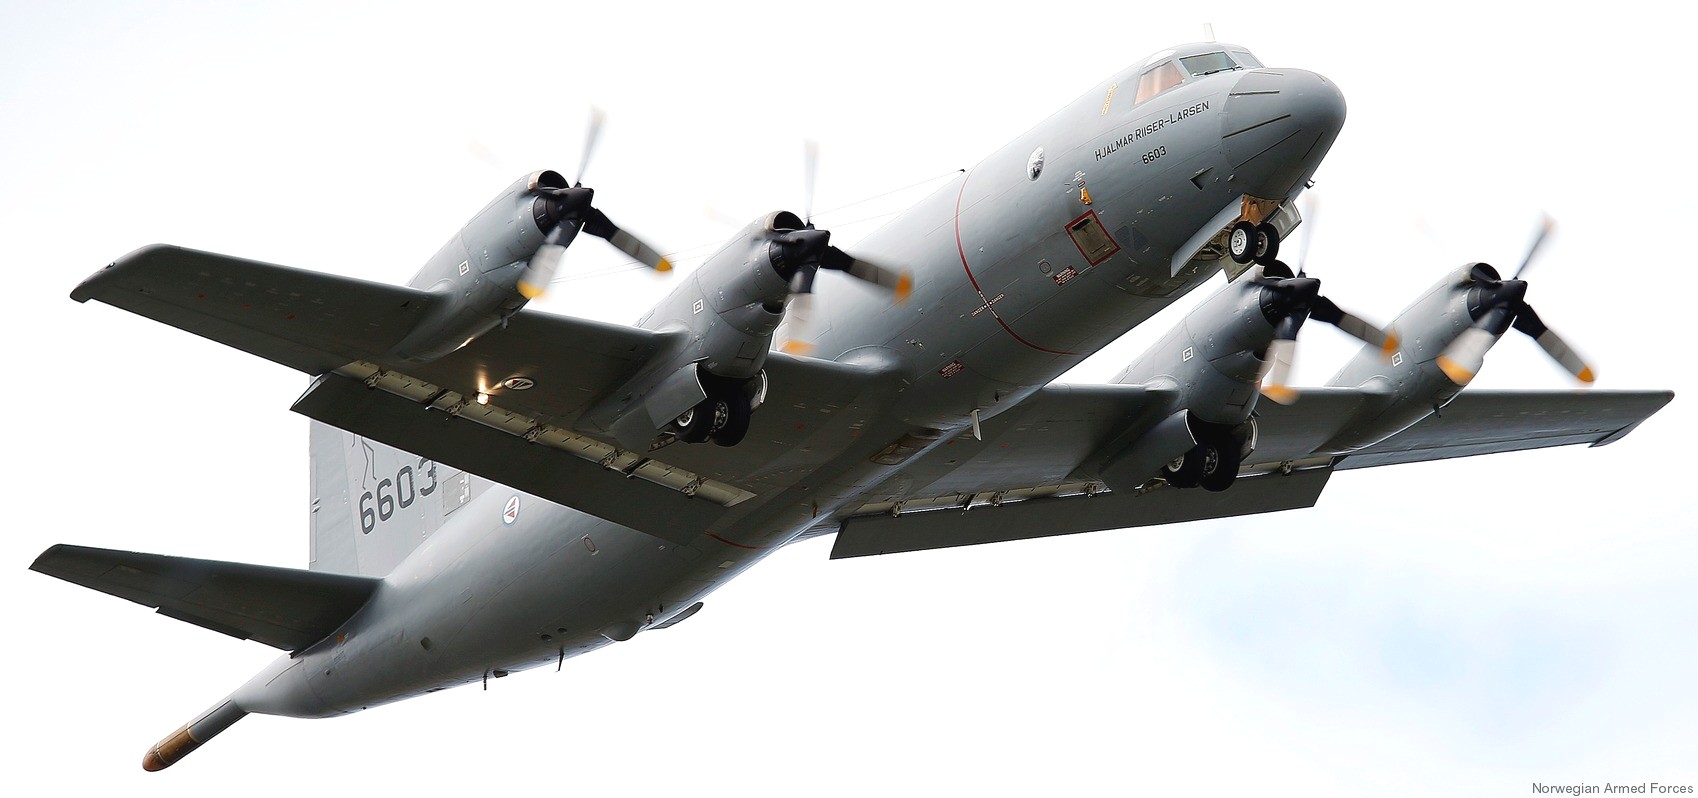 lockheed p-3n orion hjalmar riiser larsen 6603 patrol royal norwegian air force 11